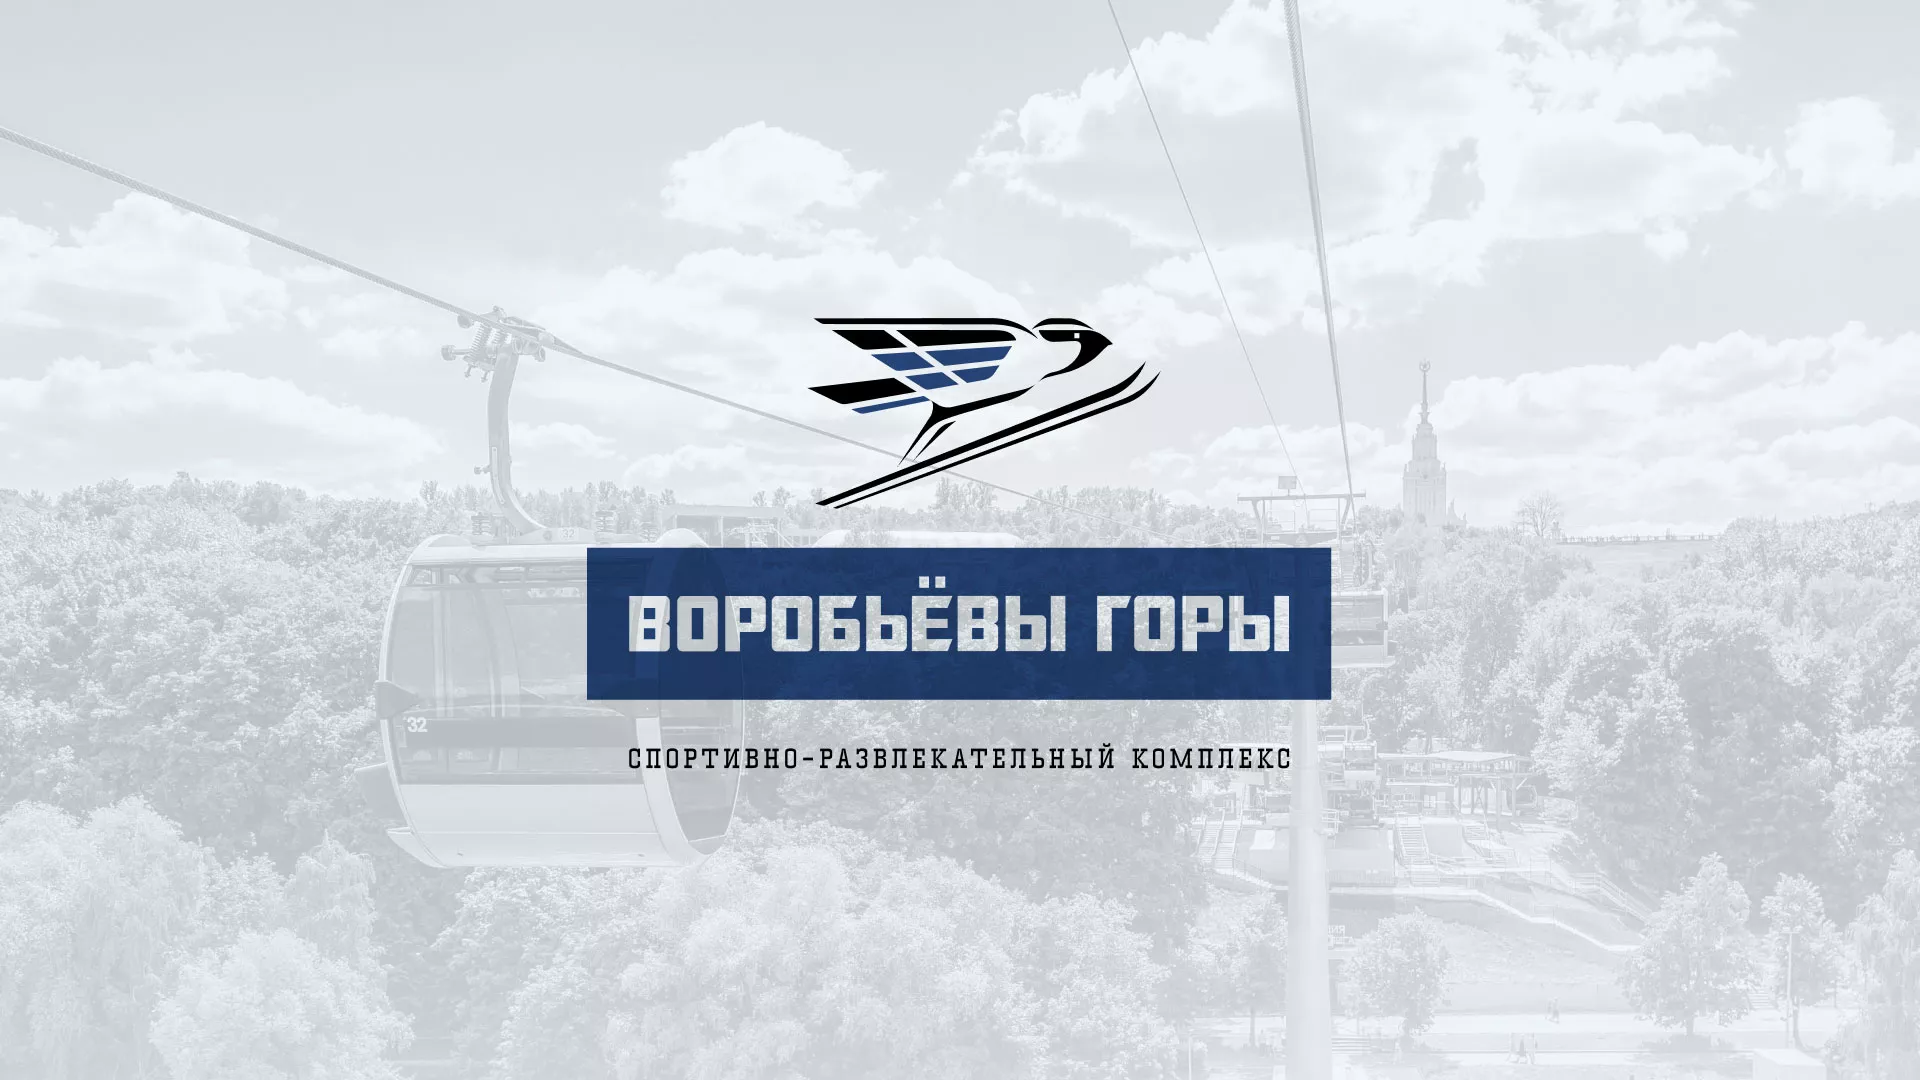 Разработка сайта в Петропавловске-Камчатском для спортивно-развлекательного комплекса «Воробьёвы горы»